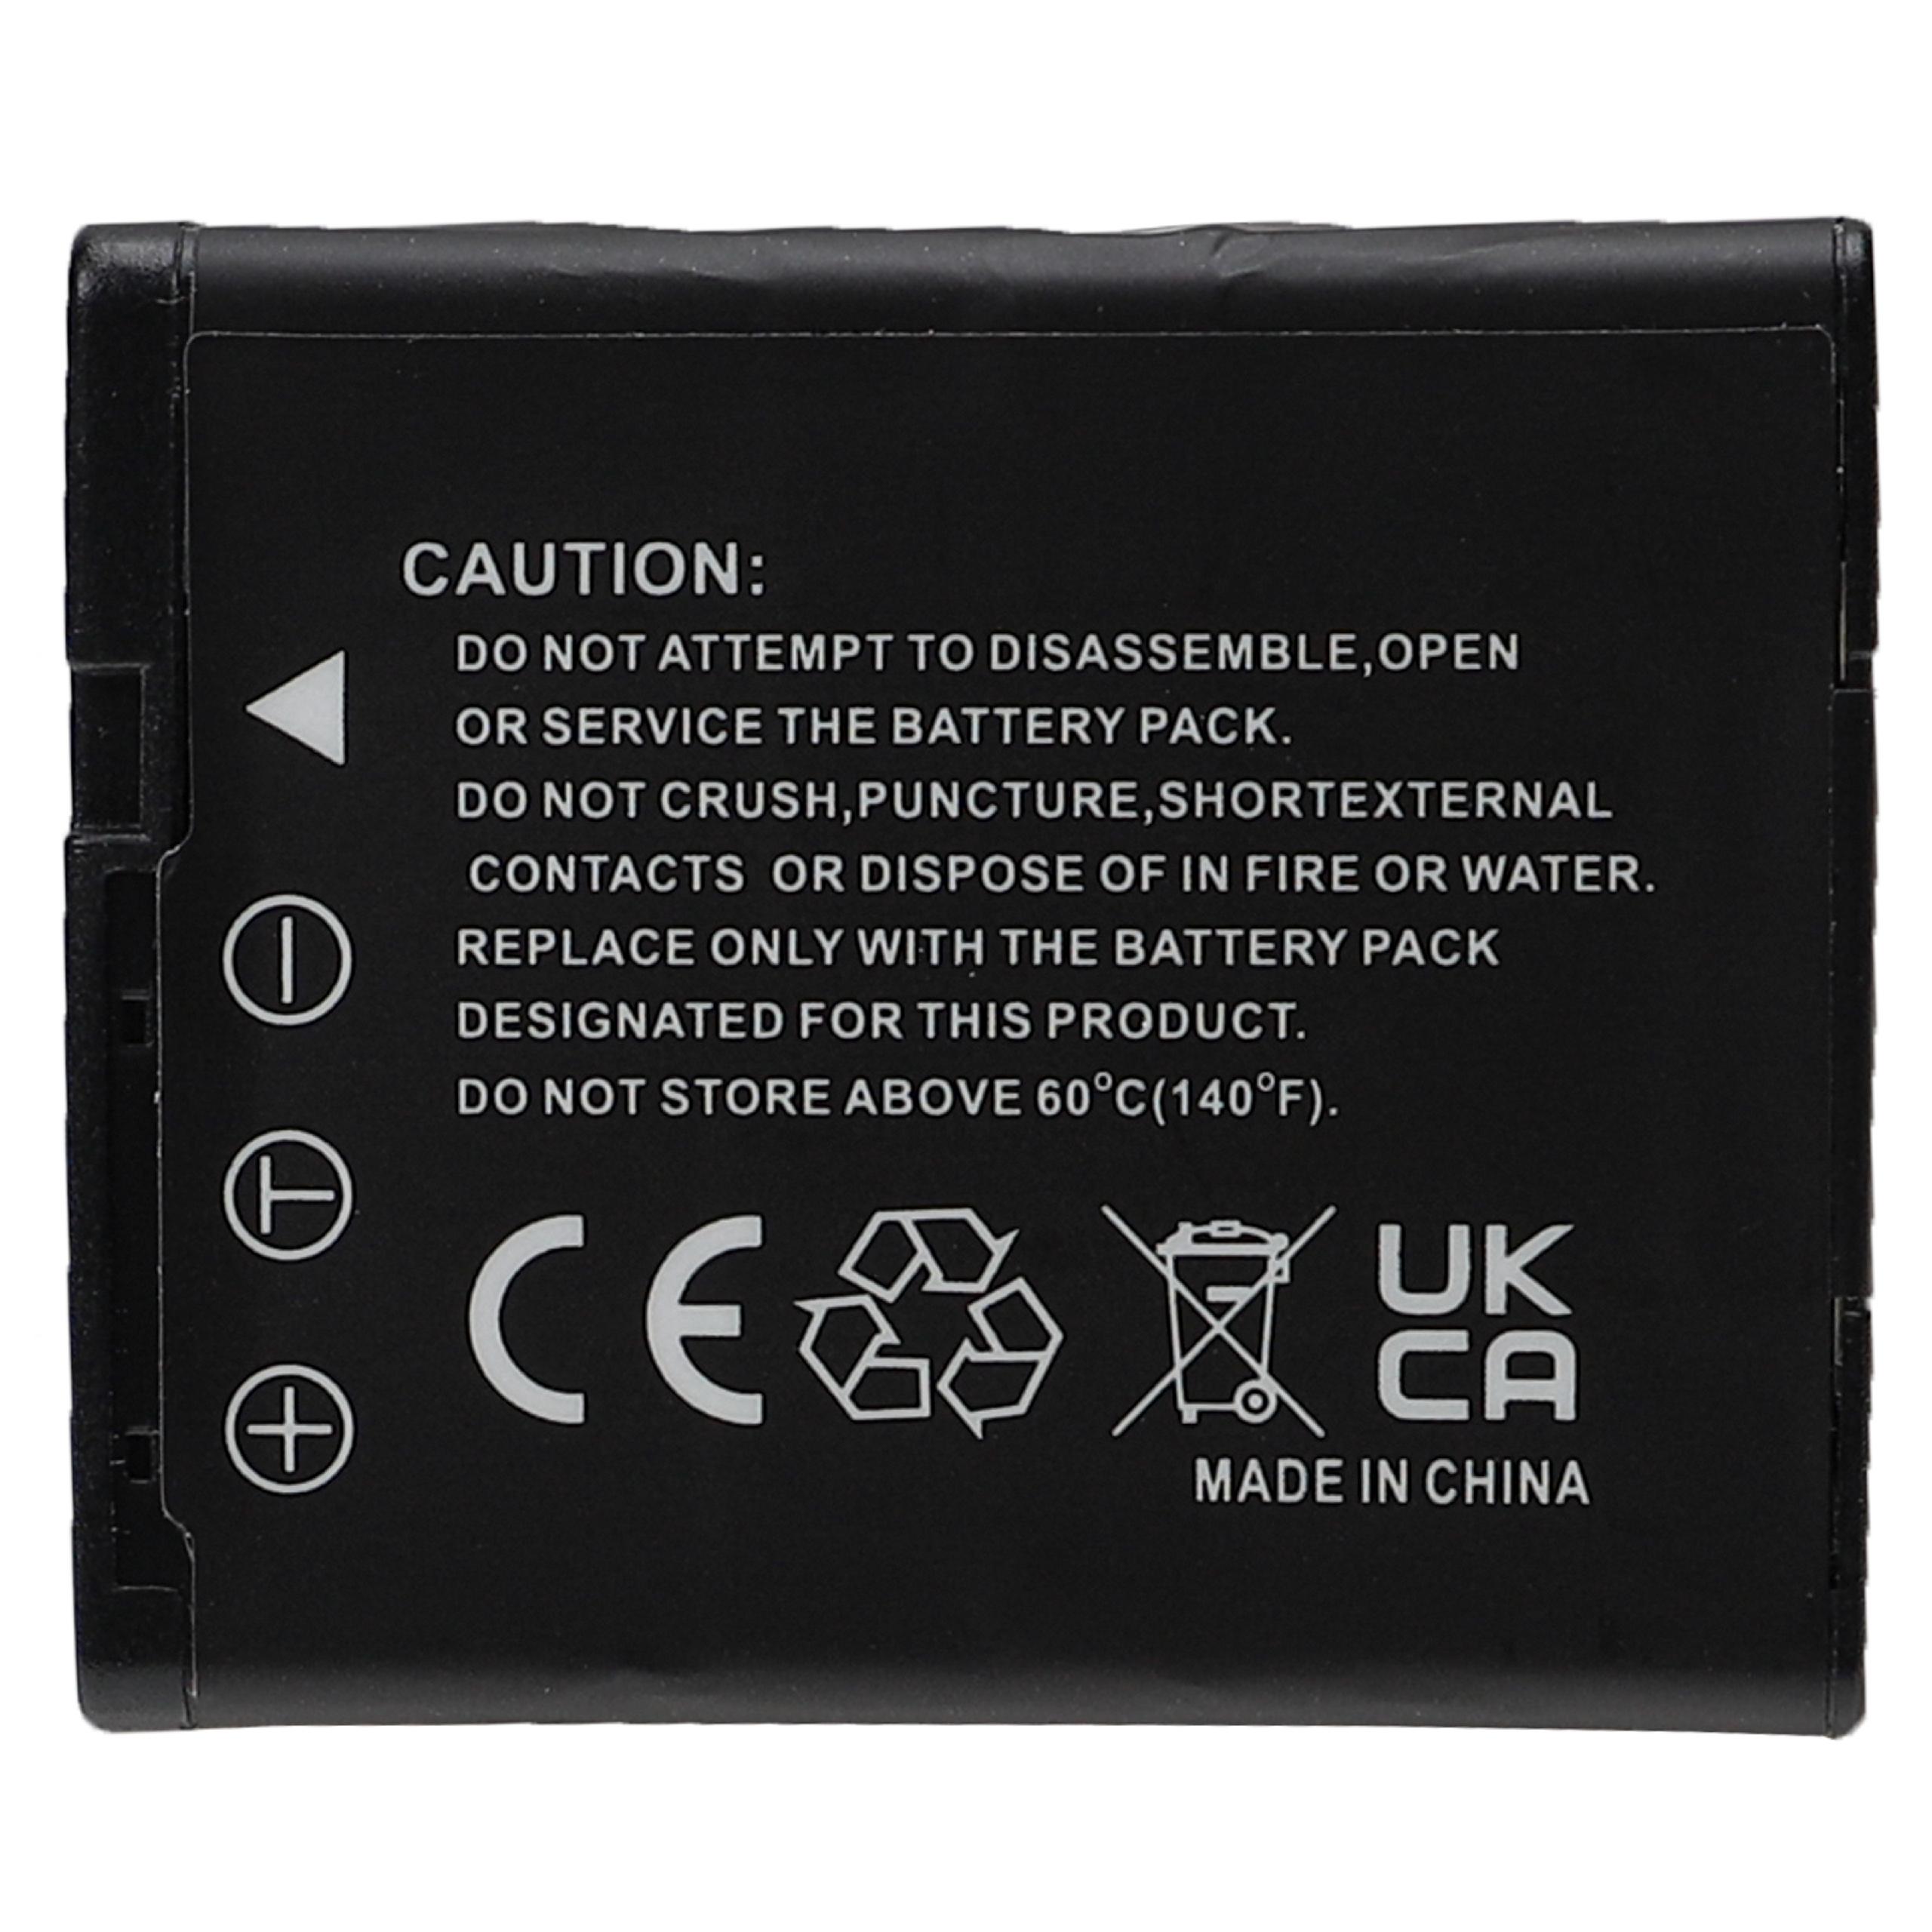 Batterie remplace Casio NP-130, NP-130A pour appareil photo - 1800mAh 3,7V Li-ion